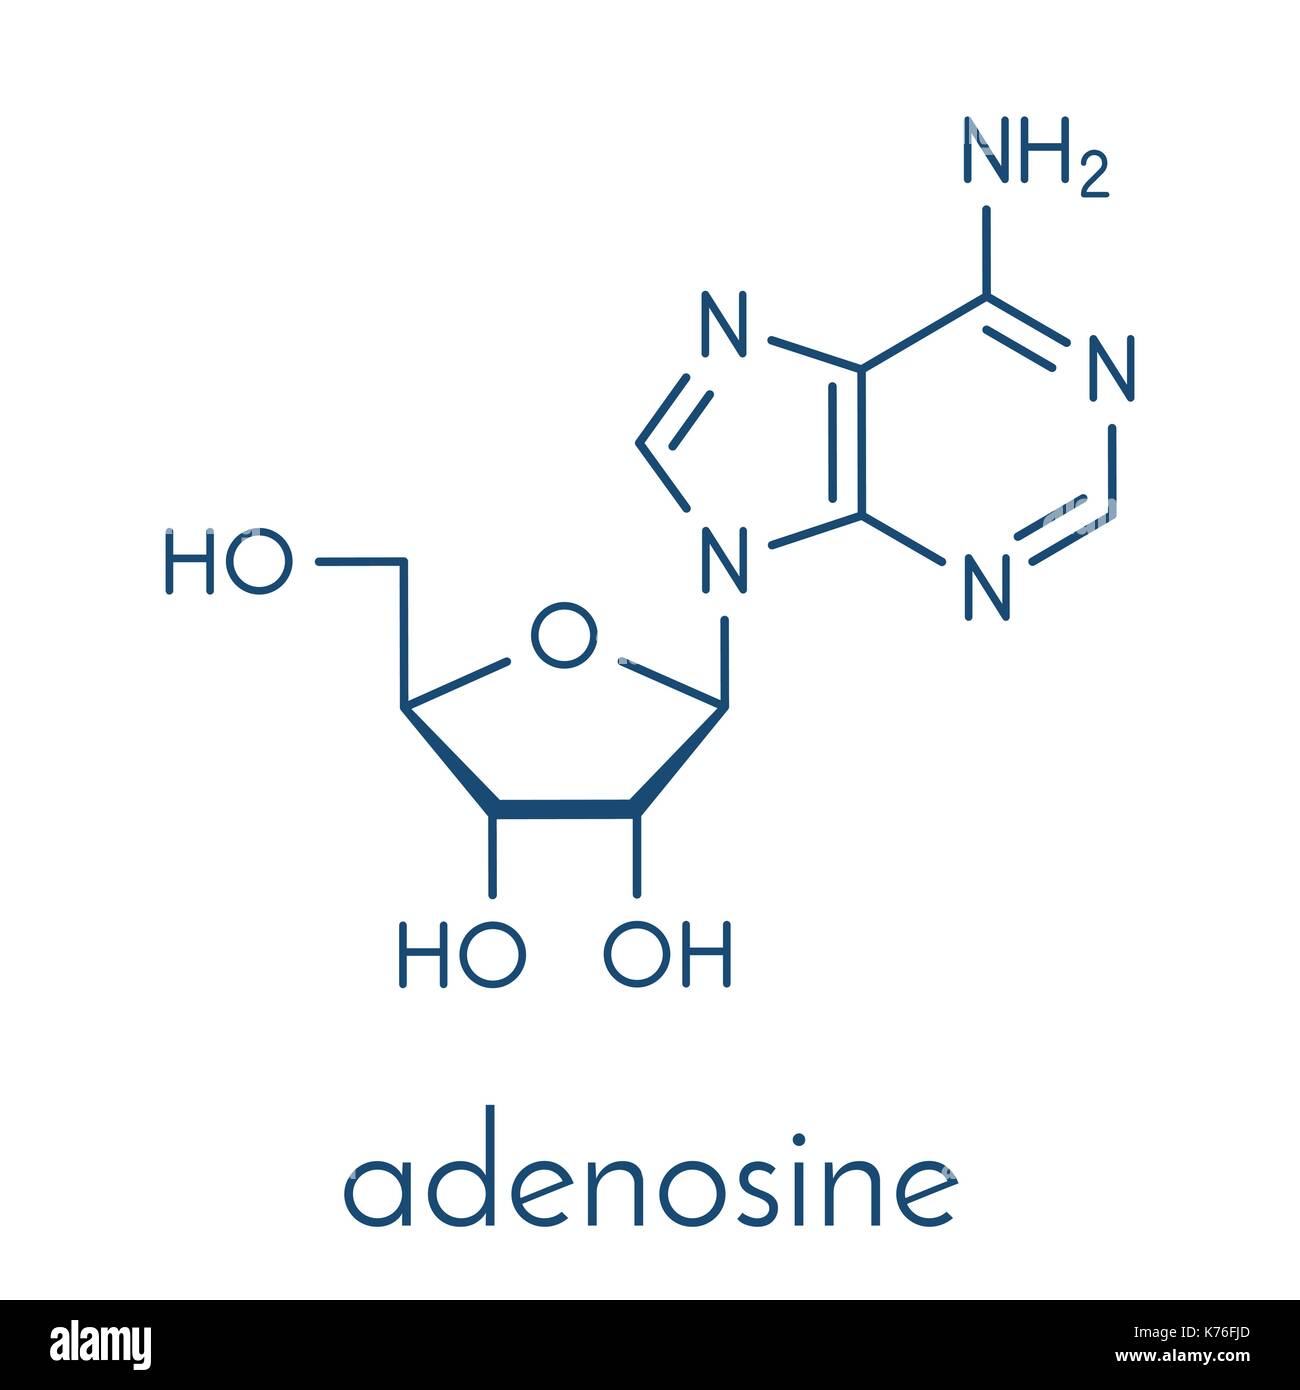 L'adénosine (Ado) de la purine nucléoside molécule. composante importante de l'ATP, ADP, camp et de l'arn. Également utilisé comme médicament. formule topologique. Illustration de Vecteur